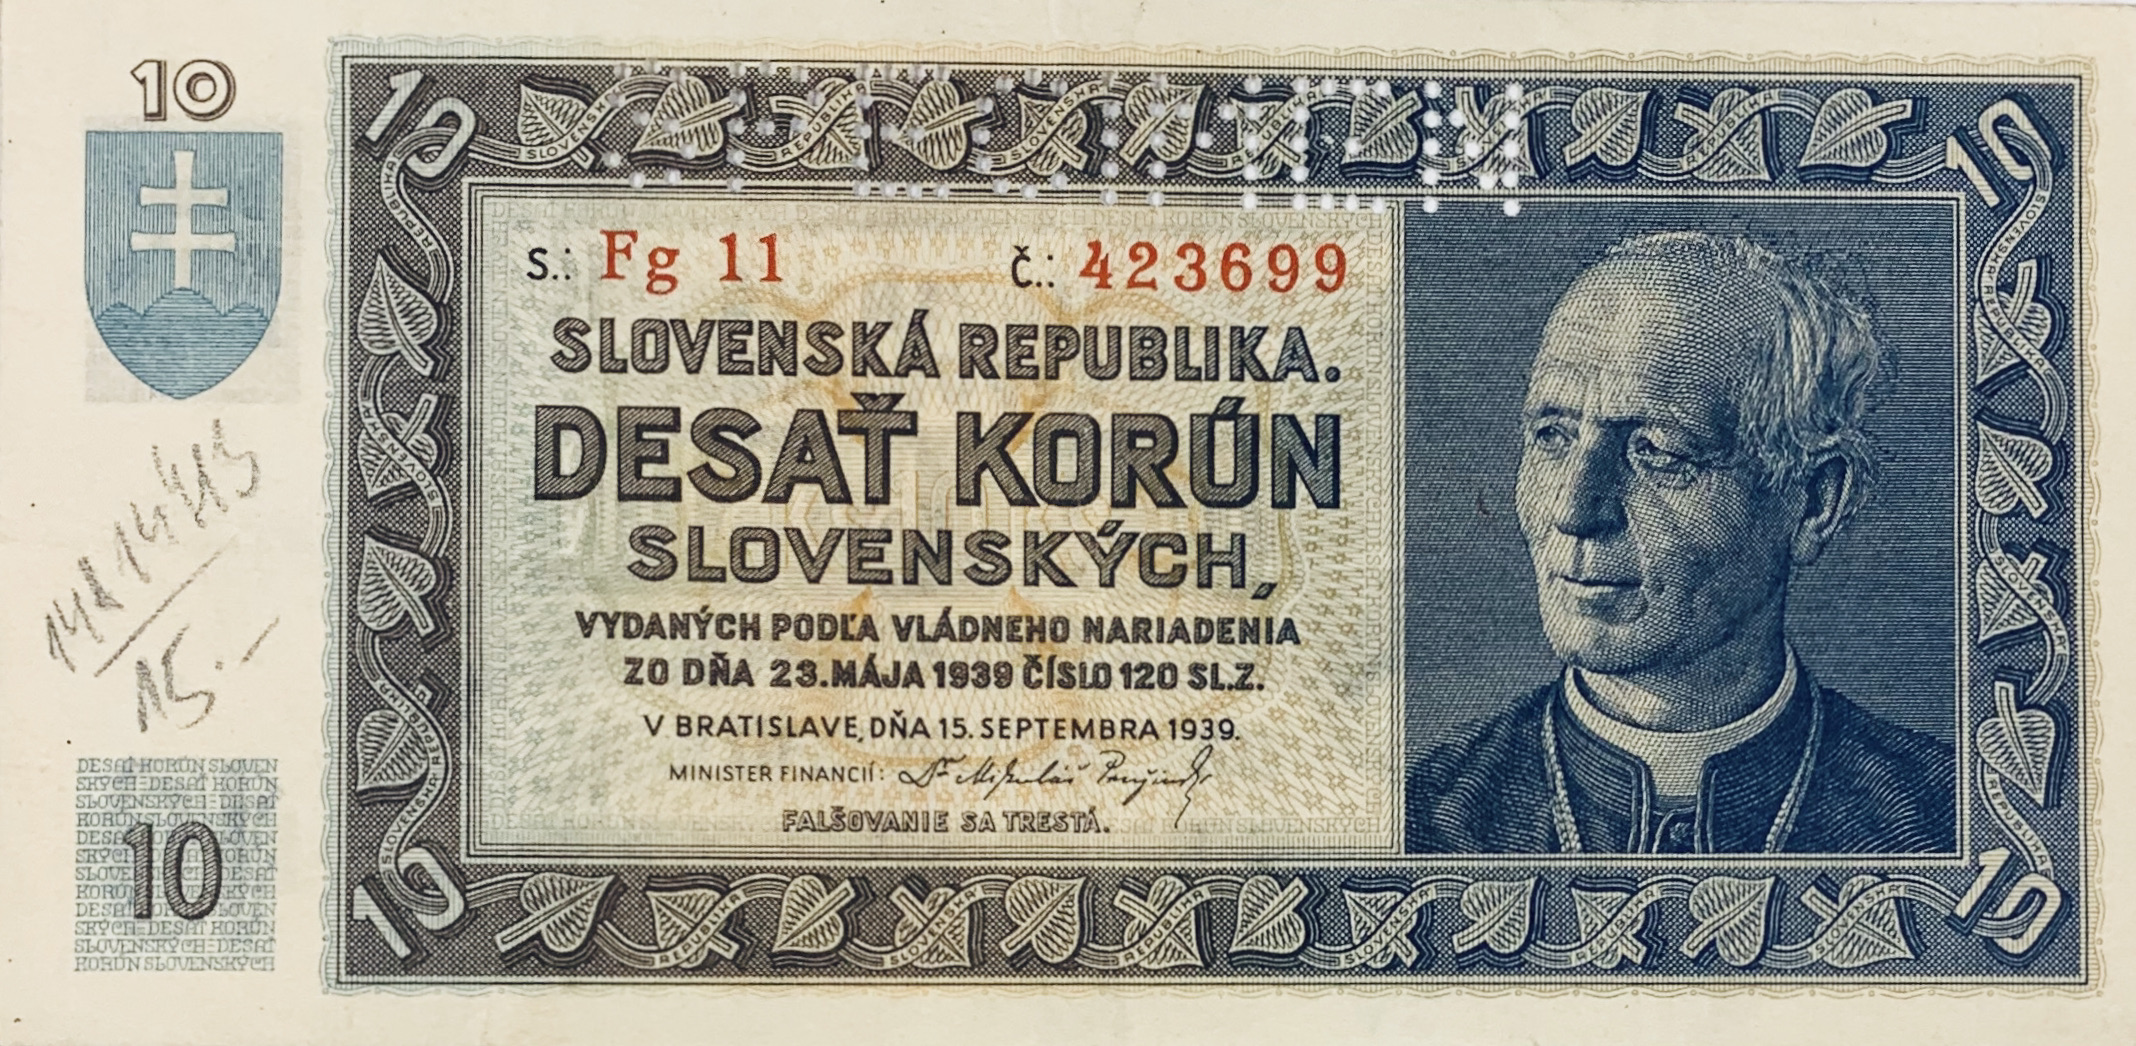 10 korun slovenských, 1939